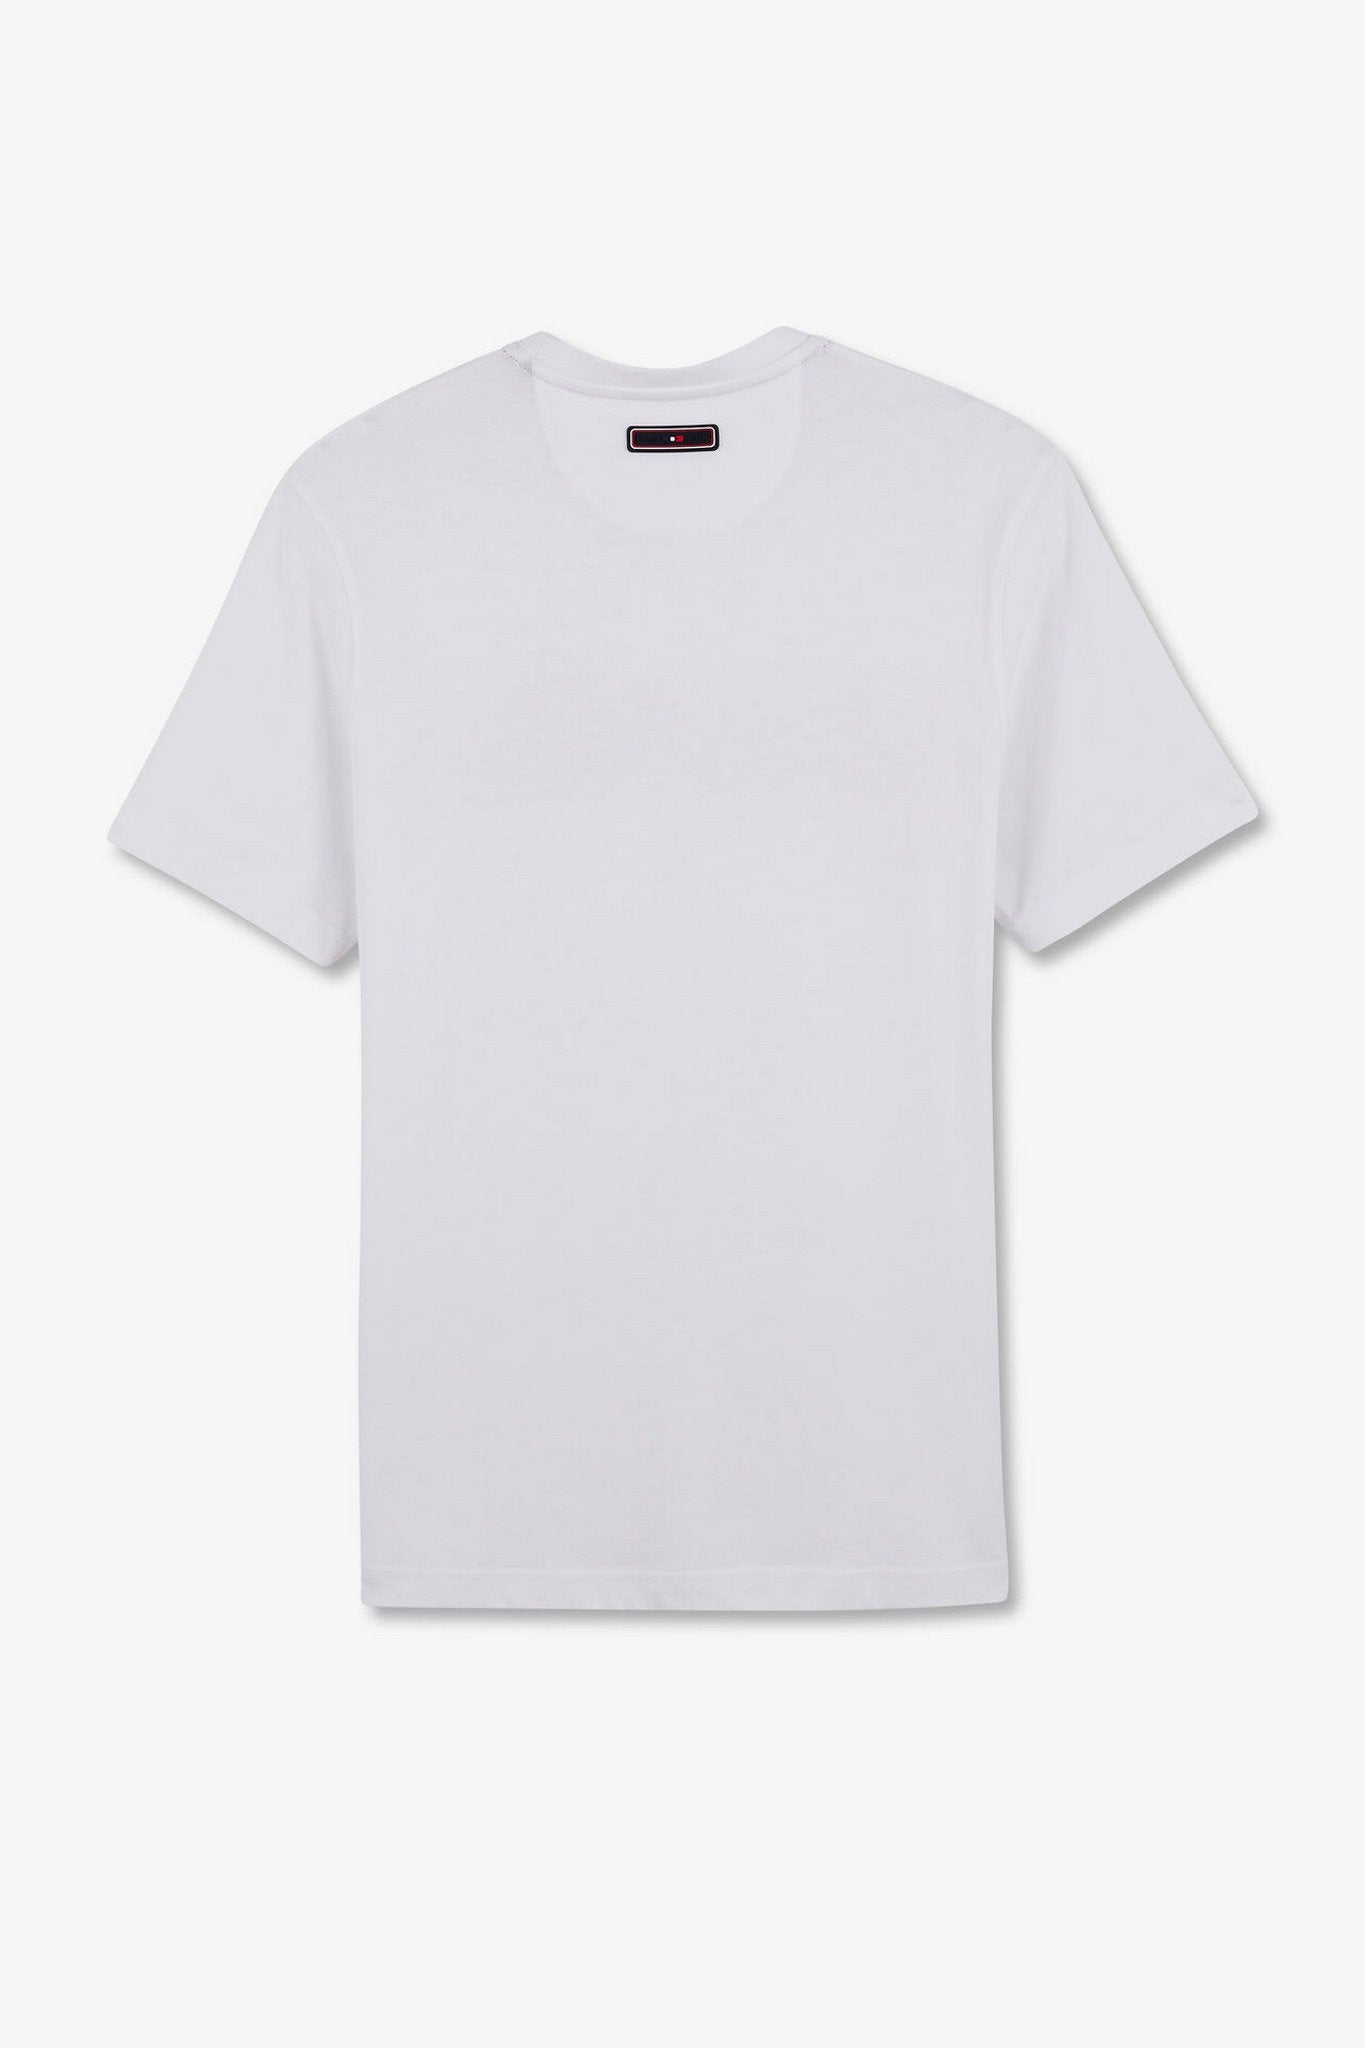 White T-Shirt With Double Eden Park Lettering_E24MAITC0039_BC_05